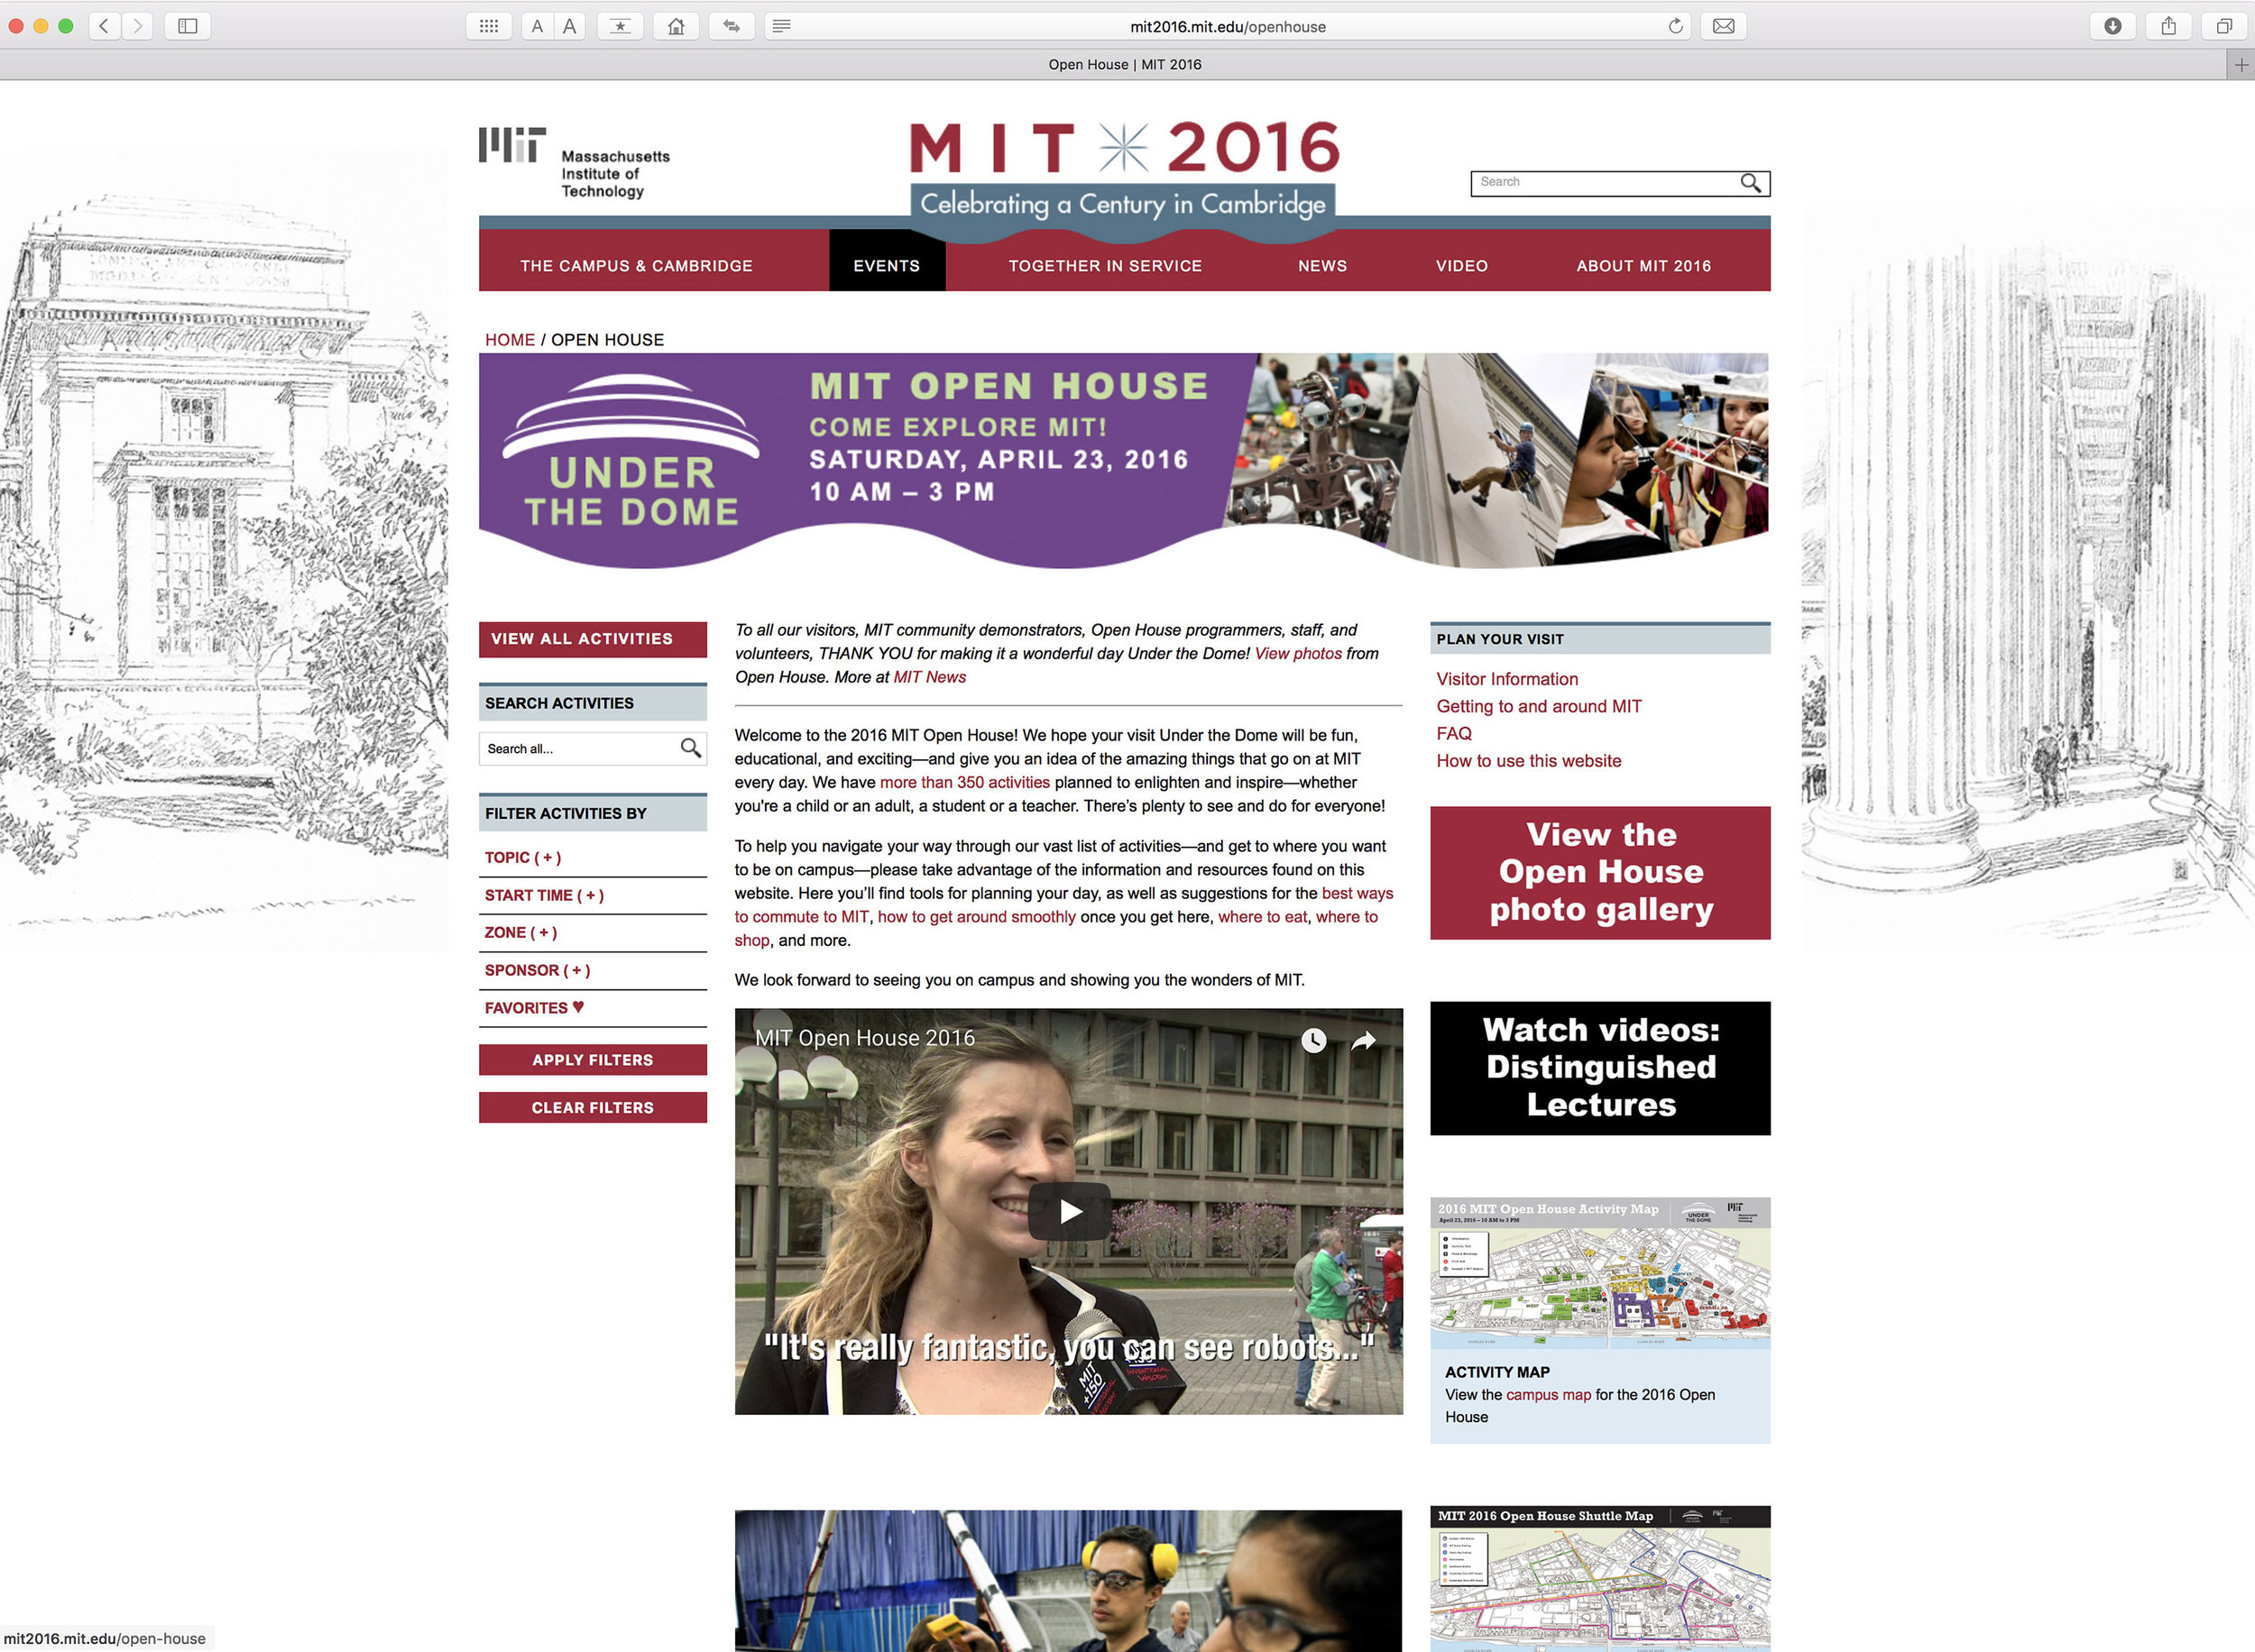 MIT 2016 website, Open House